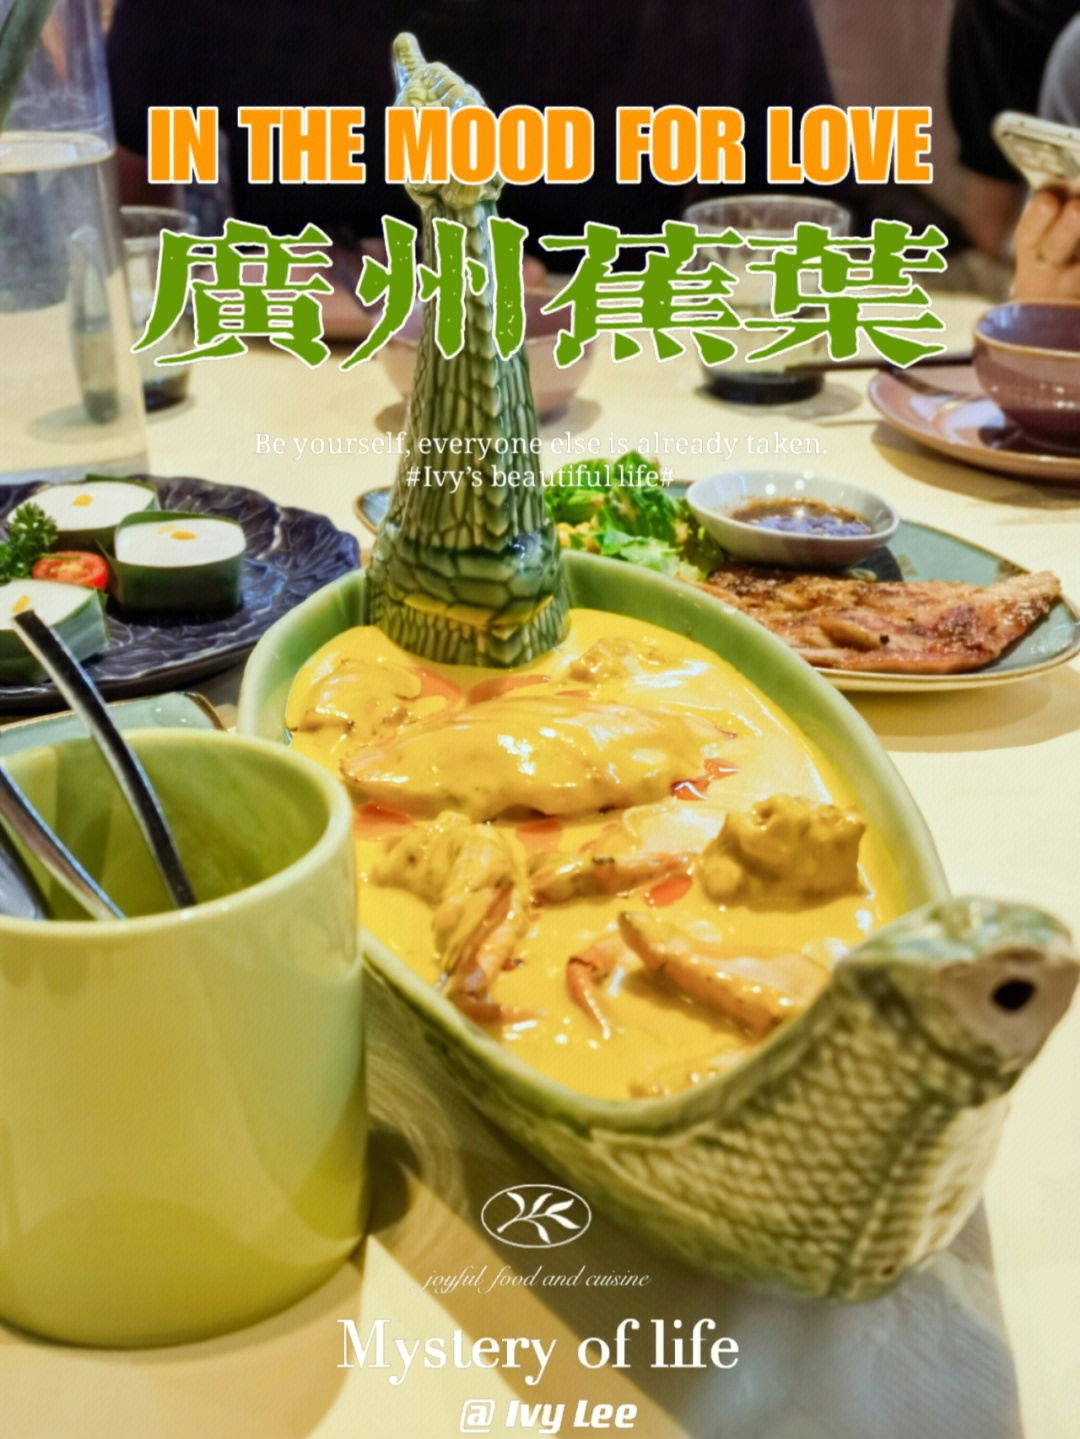 上海广州蕉叶餐厅图片